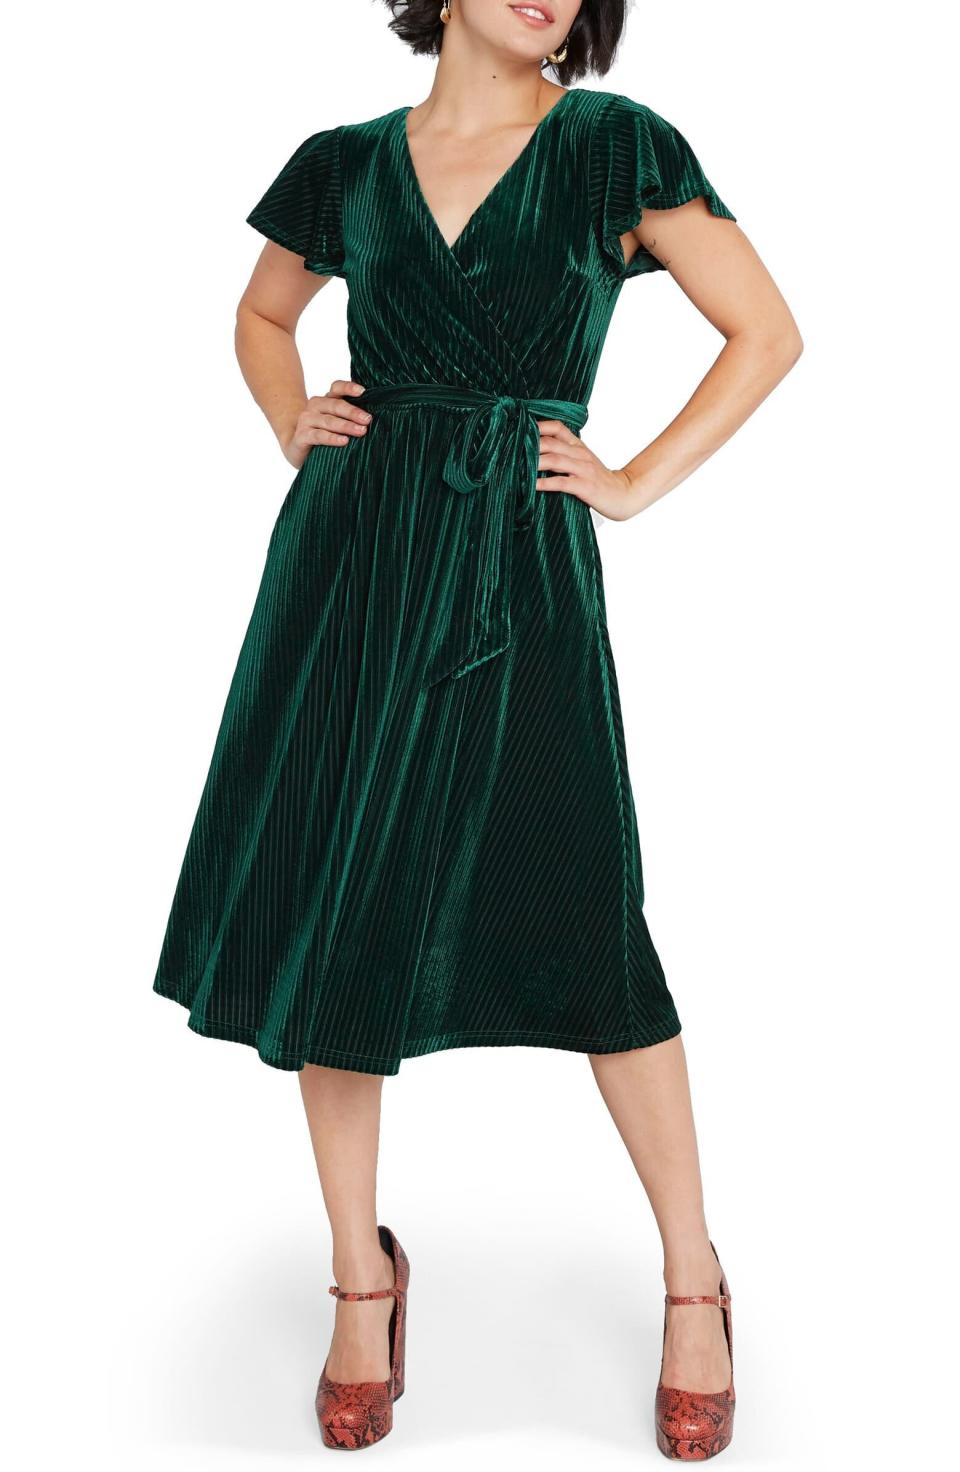 <i>Get the <a href="https://shop.nordstrom.com/s/modcloth-faux-wrap-velvet-dress-regular-plus-size/5336511/full" target="_blank" rel="noopener noreferrer">Modcloth Faux Wrap Velvet Dress</a> for $99.&nbsp;</i>